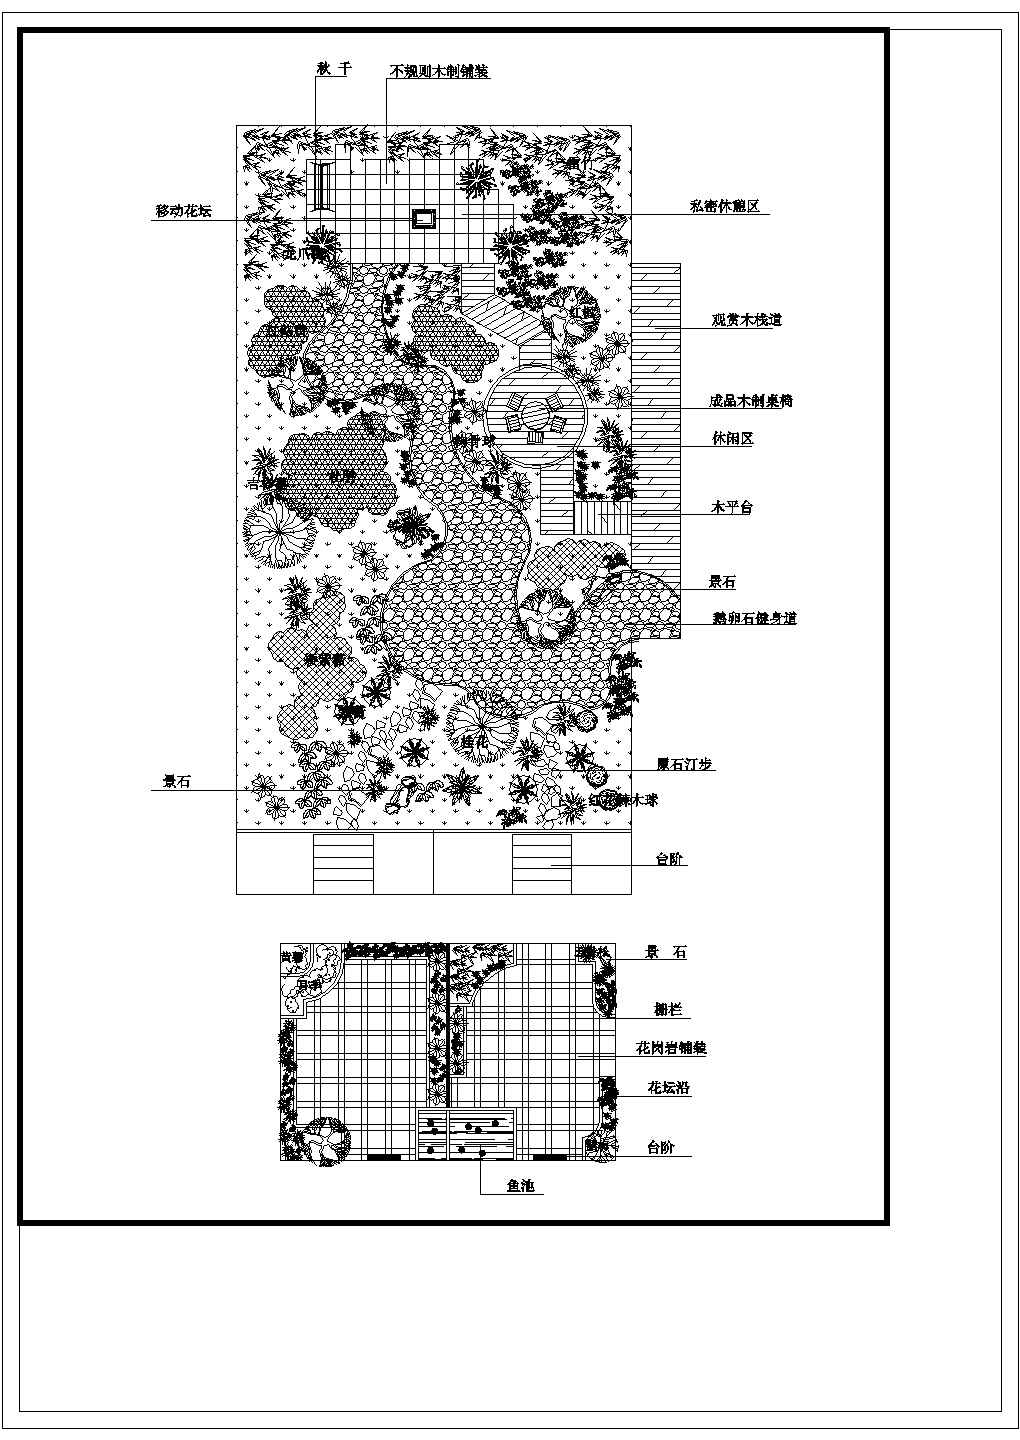 银川市繁华誓园小区住宅楼屋顶景观花园平面设计CAD设计图